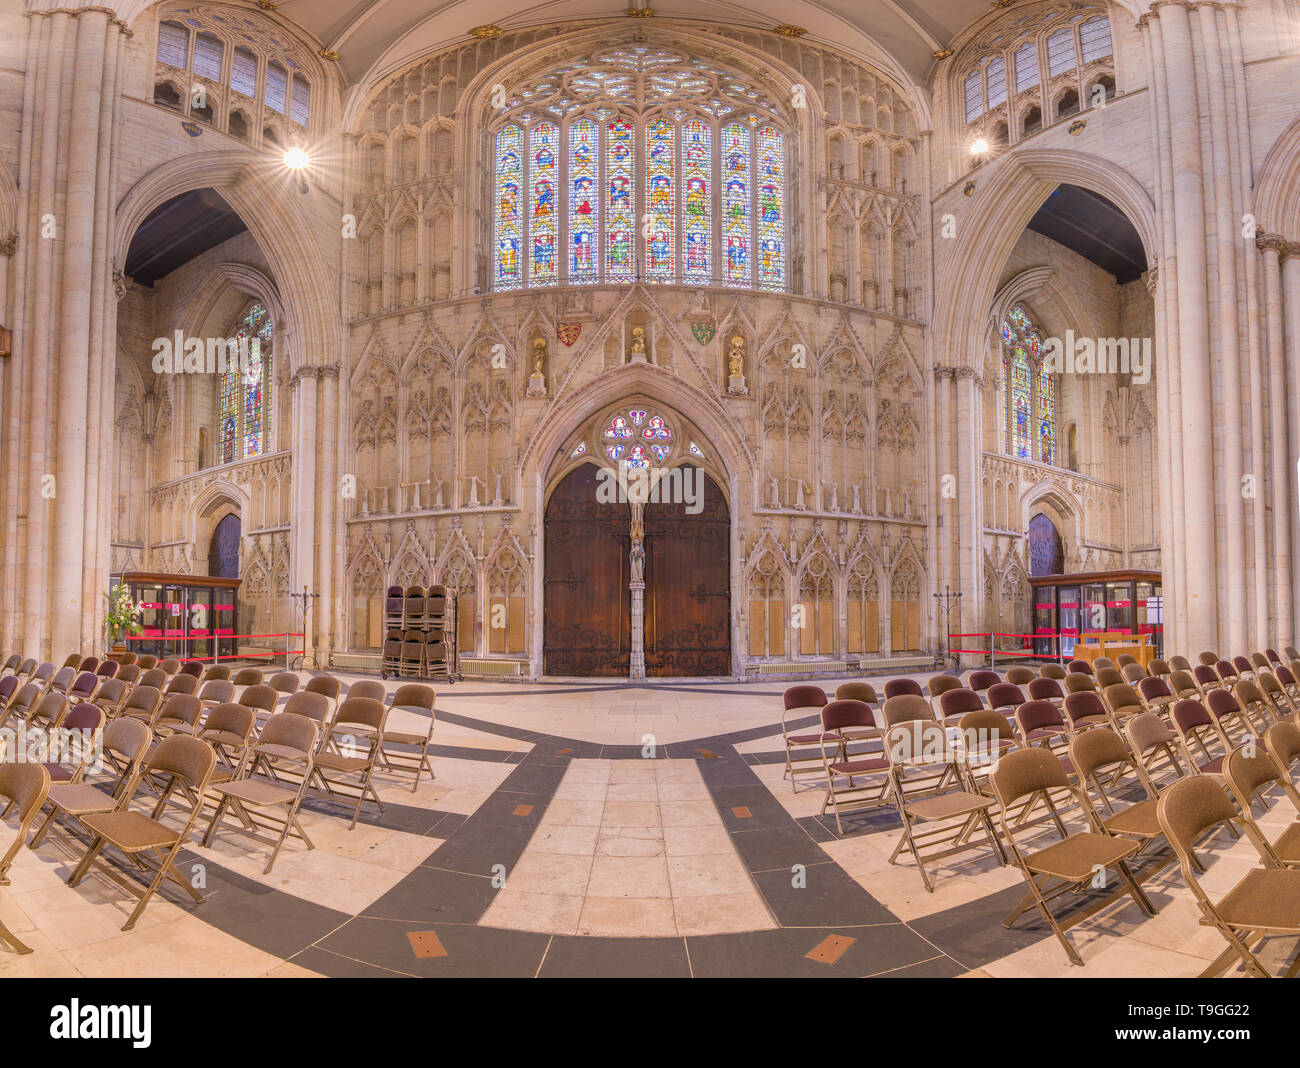 Ingresso e vetrate colorate all'estremità ovest della navata nel medioevo cristiano minster (cattedrale) a York, Inghilterra. Foto Stock